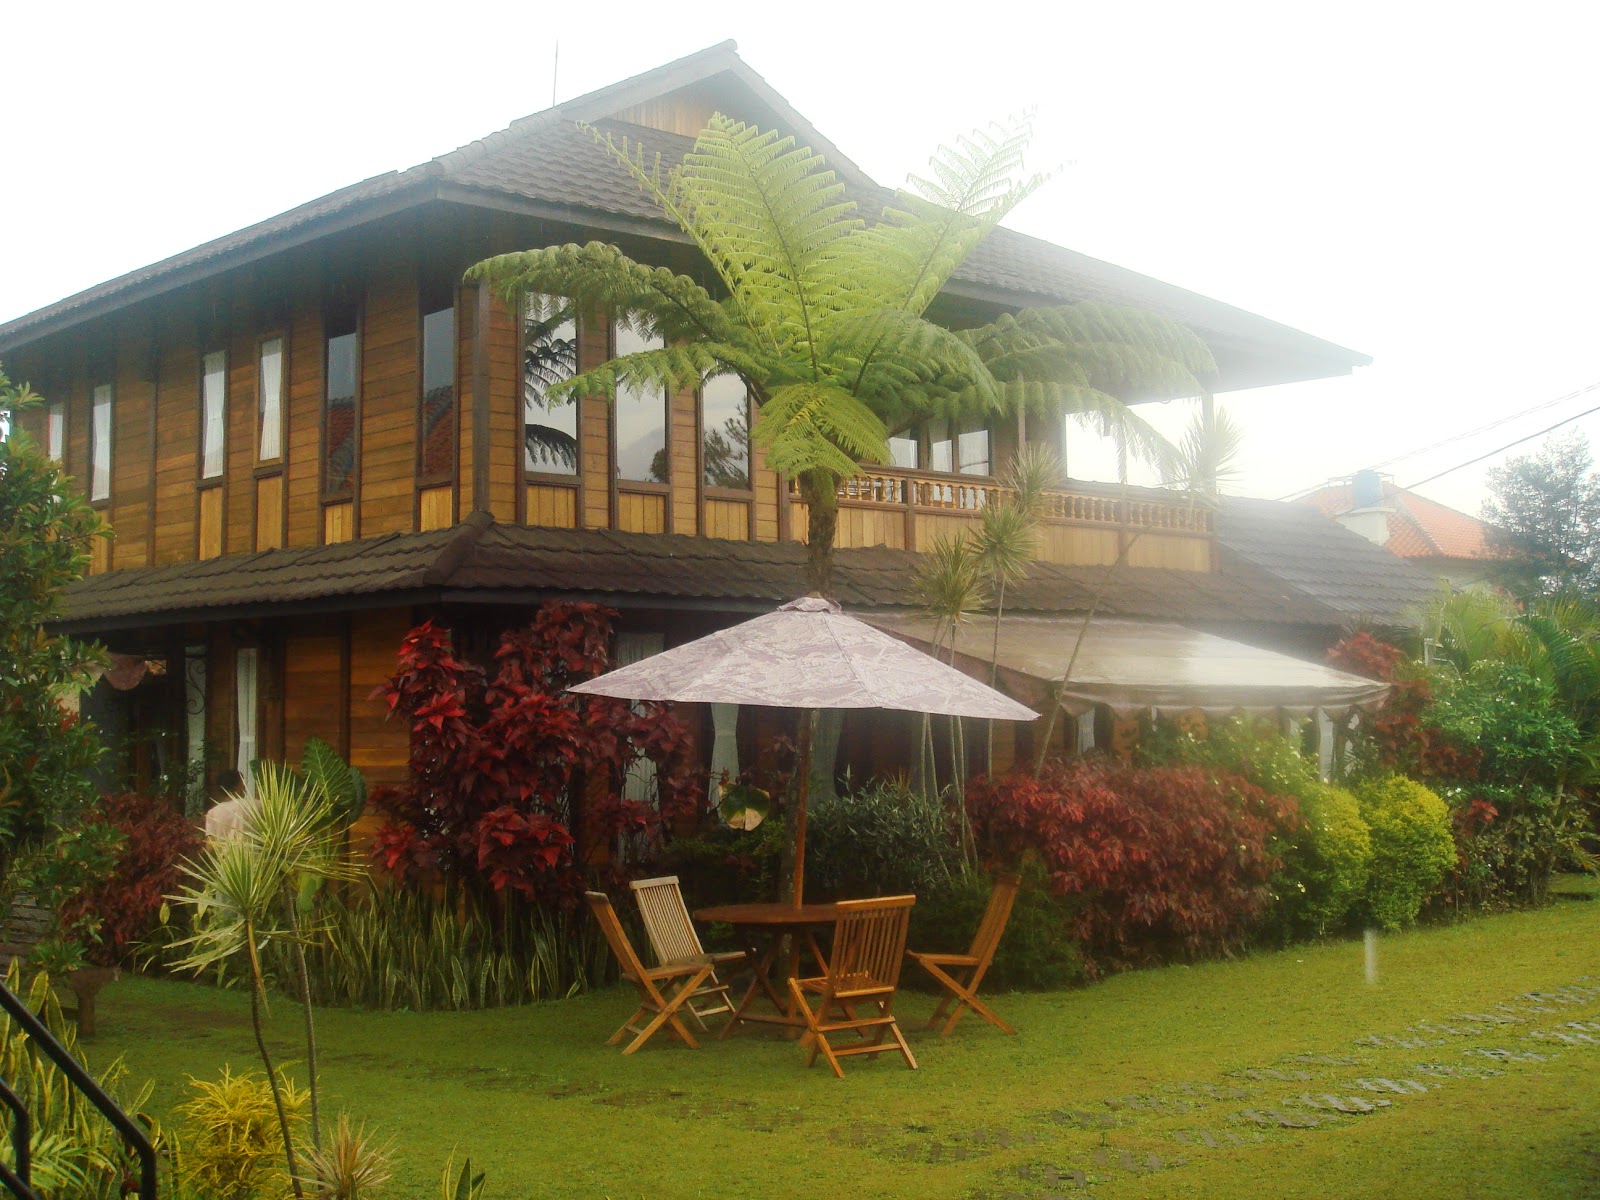   Sewa Villa di Lembang Bandung | Penginapan Hotel Sewa Villa
murah 